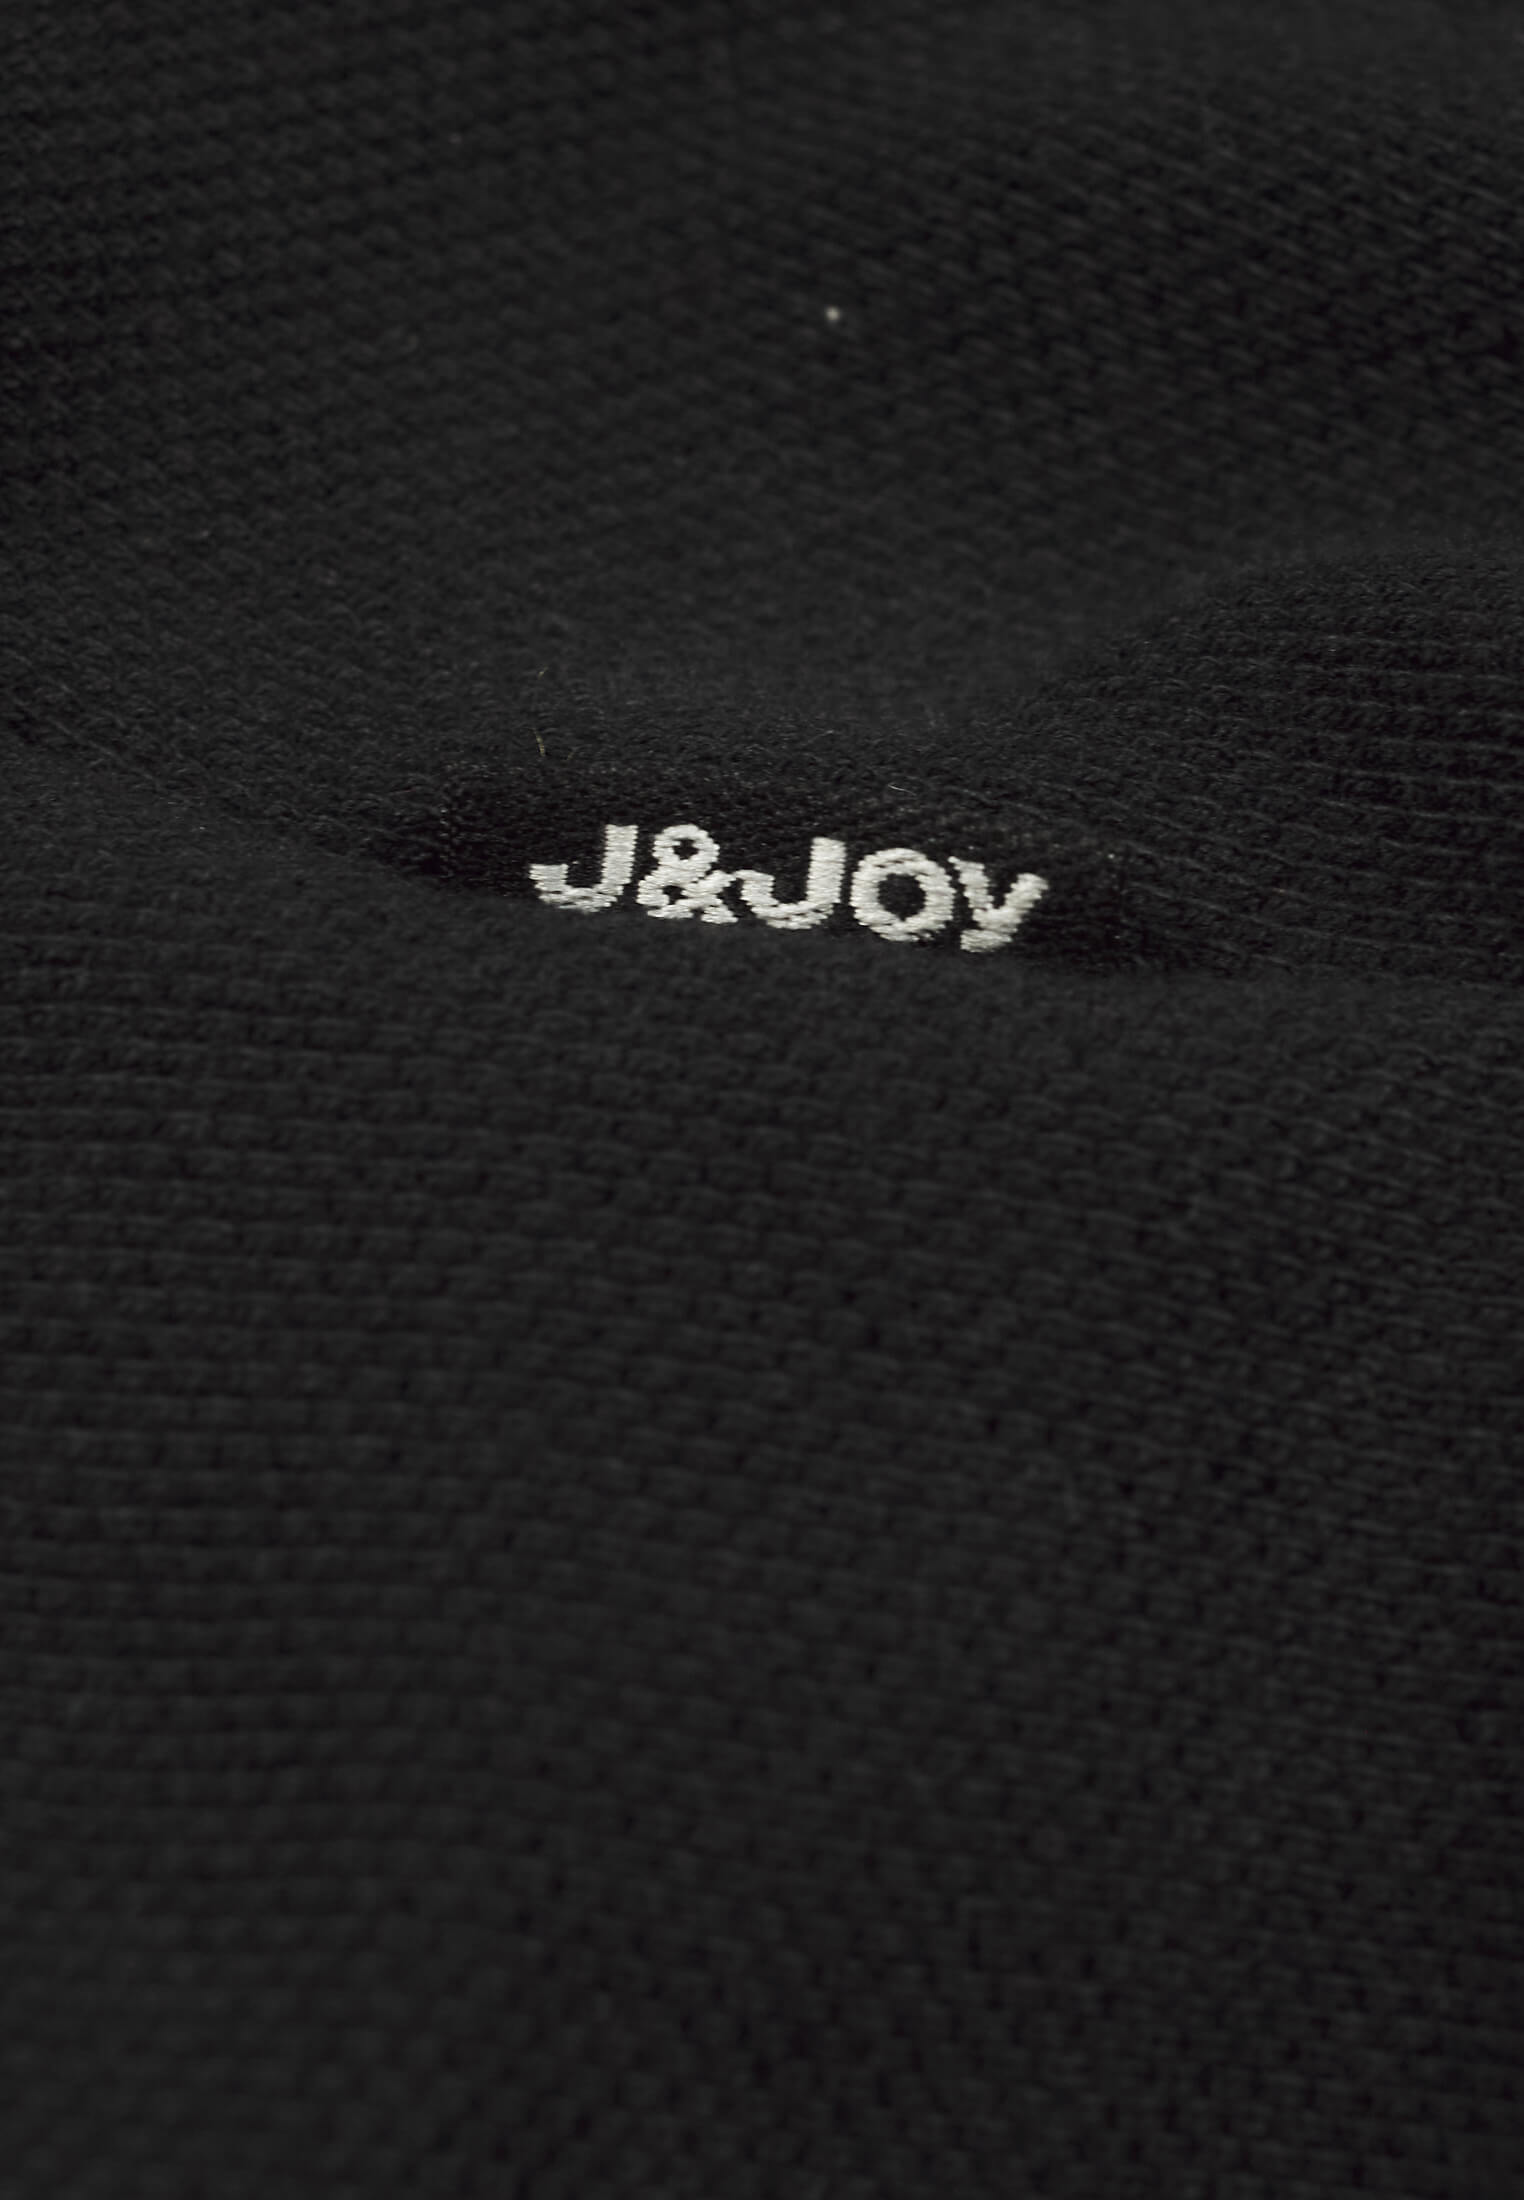 Polo Essentials Femme 26 Black Caviar | J&JOY.